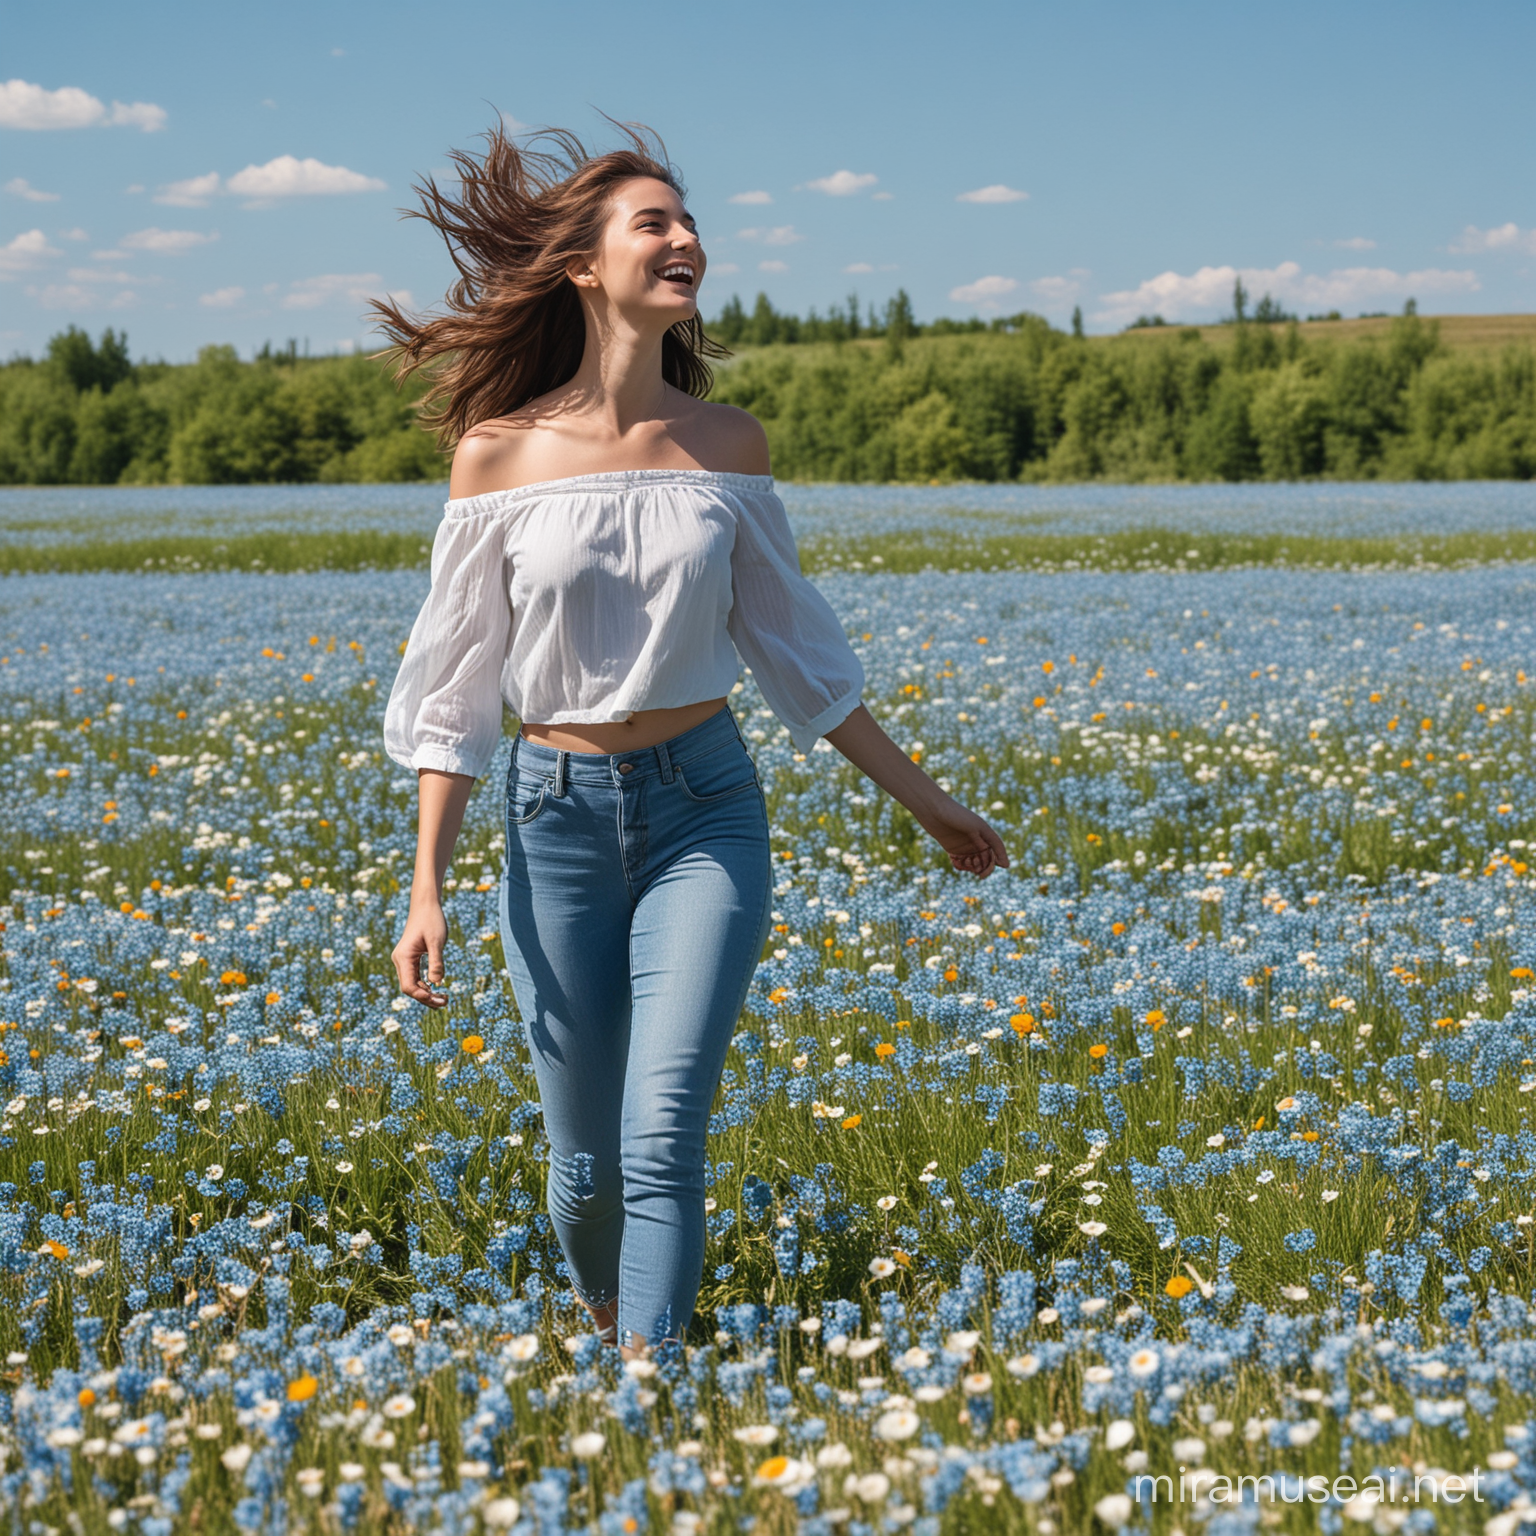 Joyful Woman Walking on Flowery Field Under Blue Sky